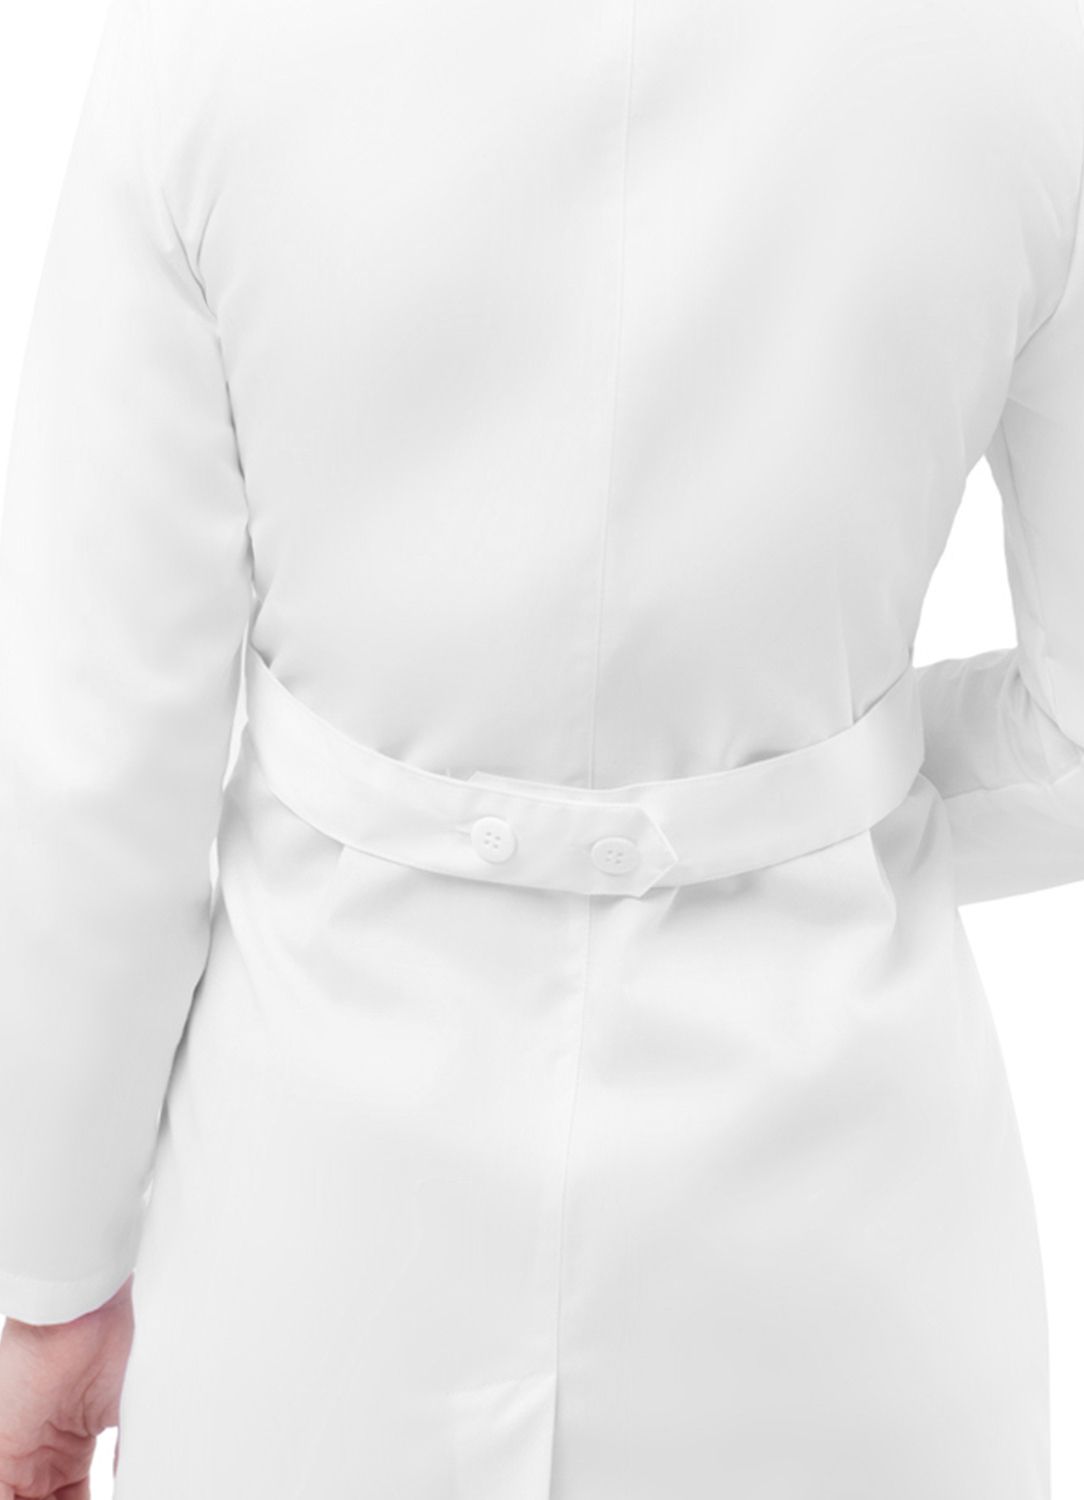 Adar - Women's 33" Adjustable Belt Lab Coat (2817)